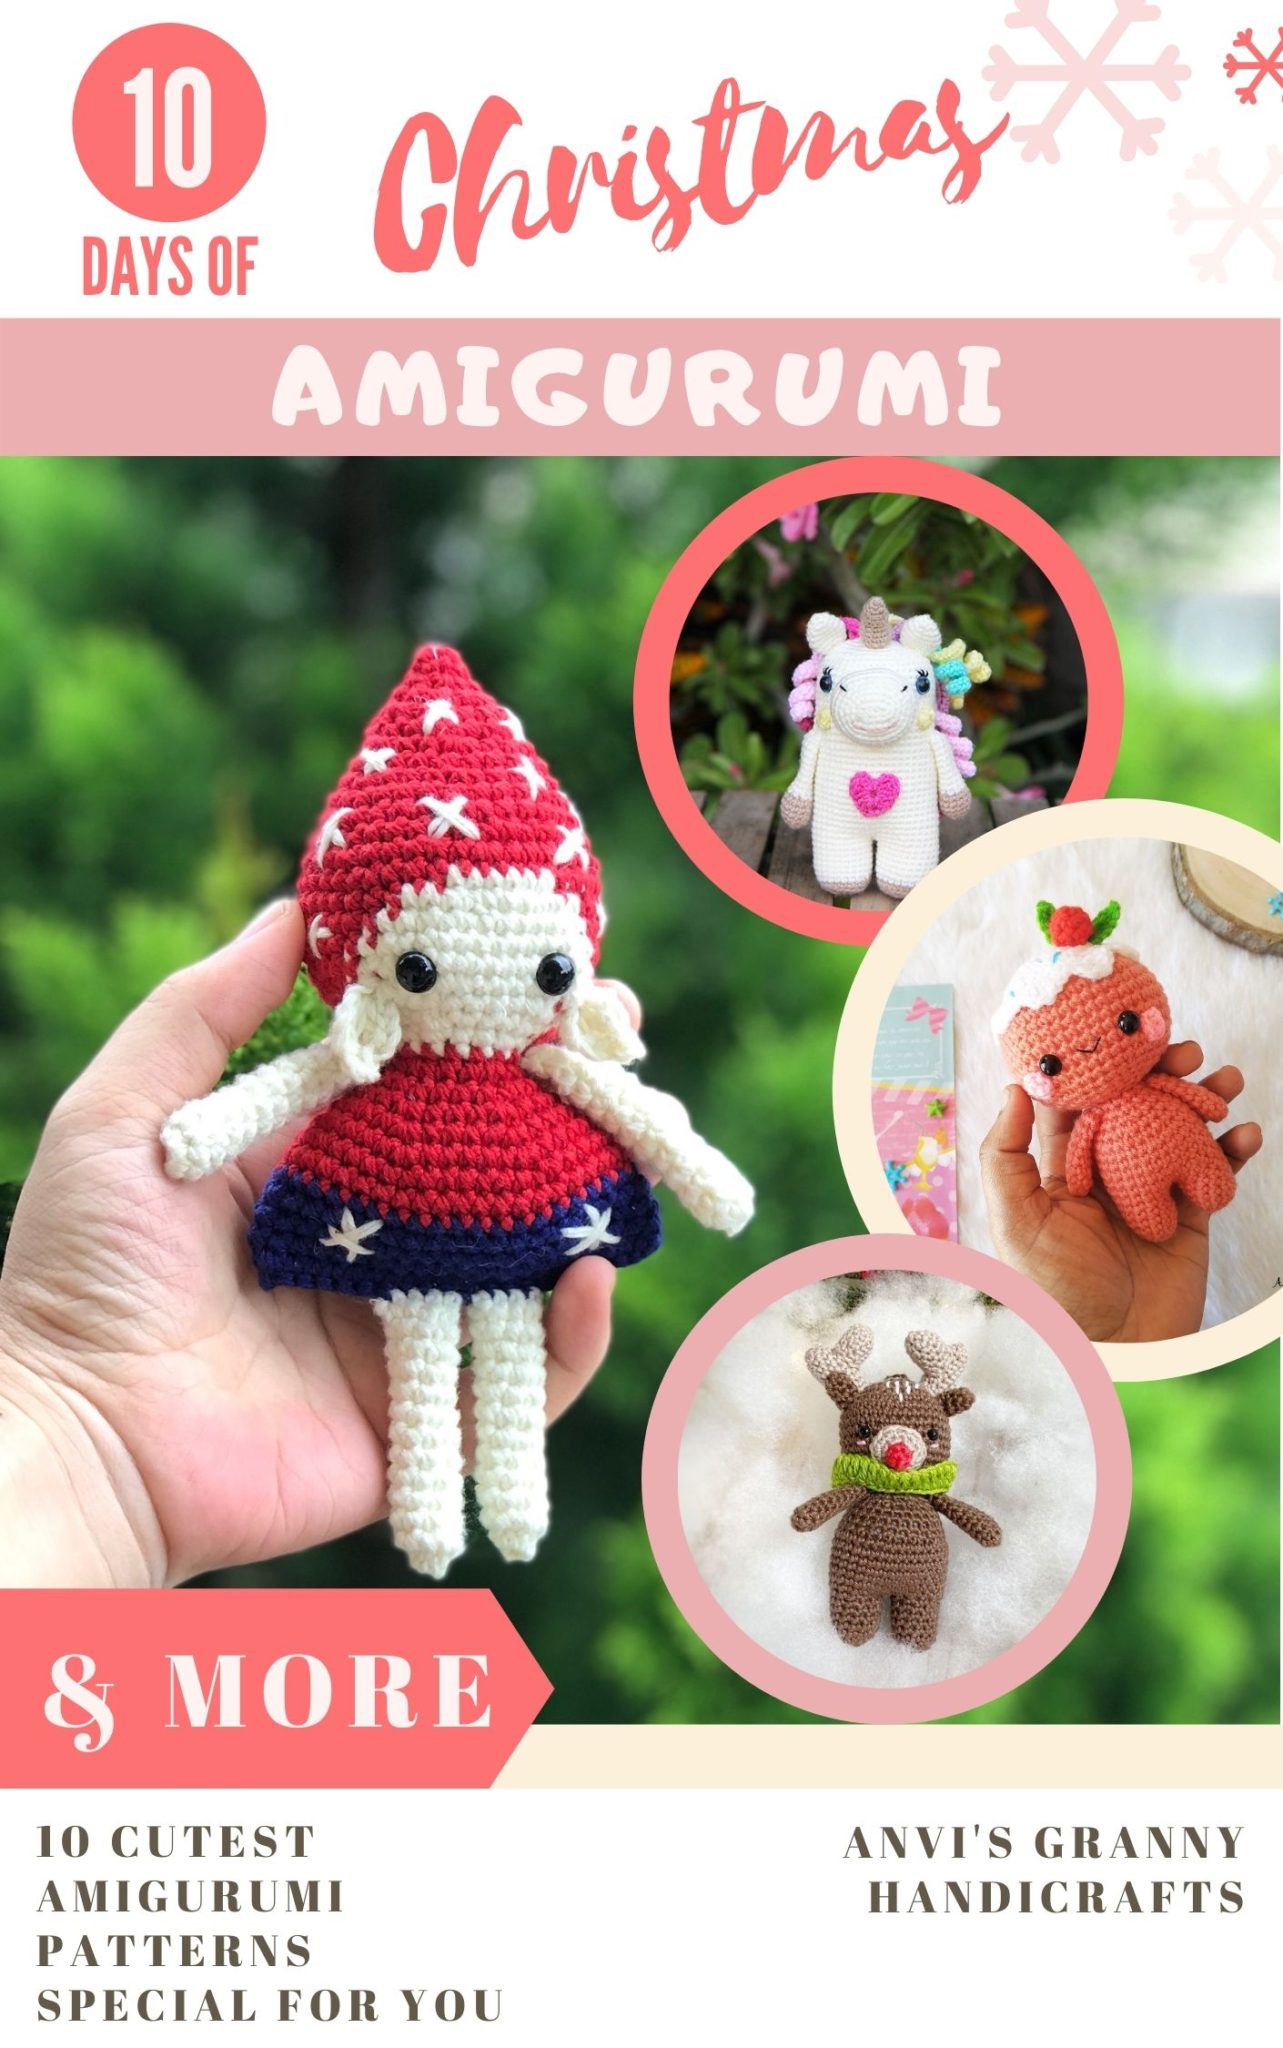 Amigurumi Christmas blog hop — Easy and cute amigurumi patterns